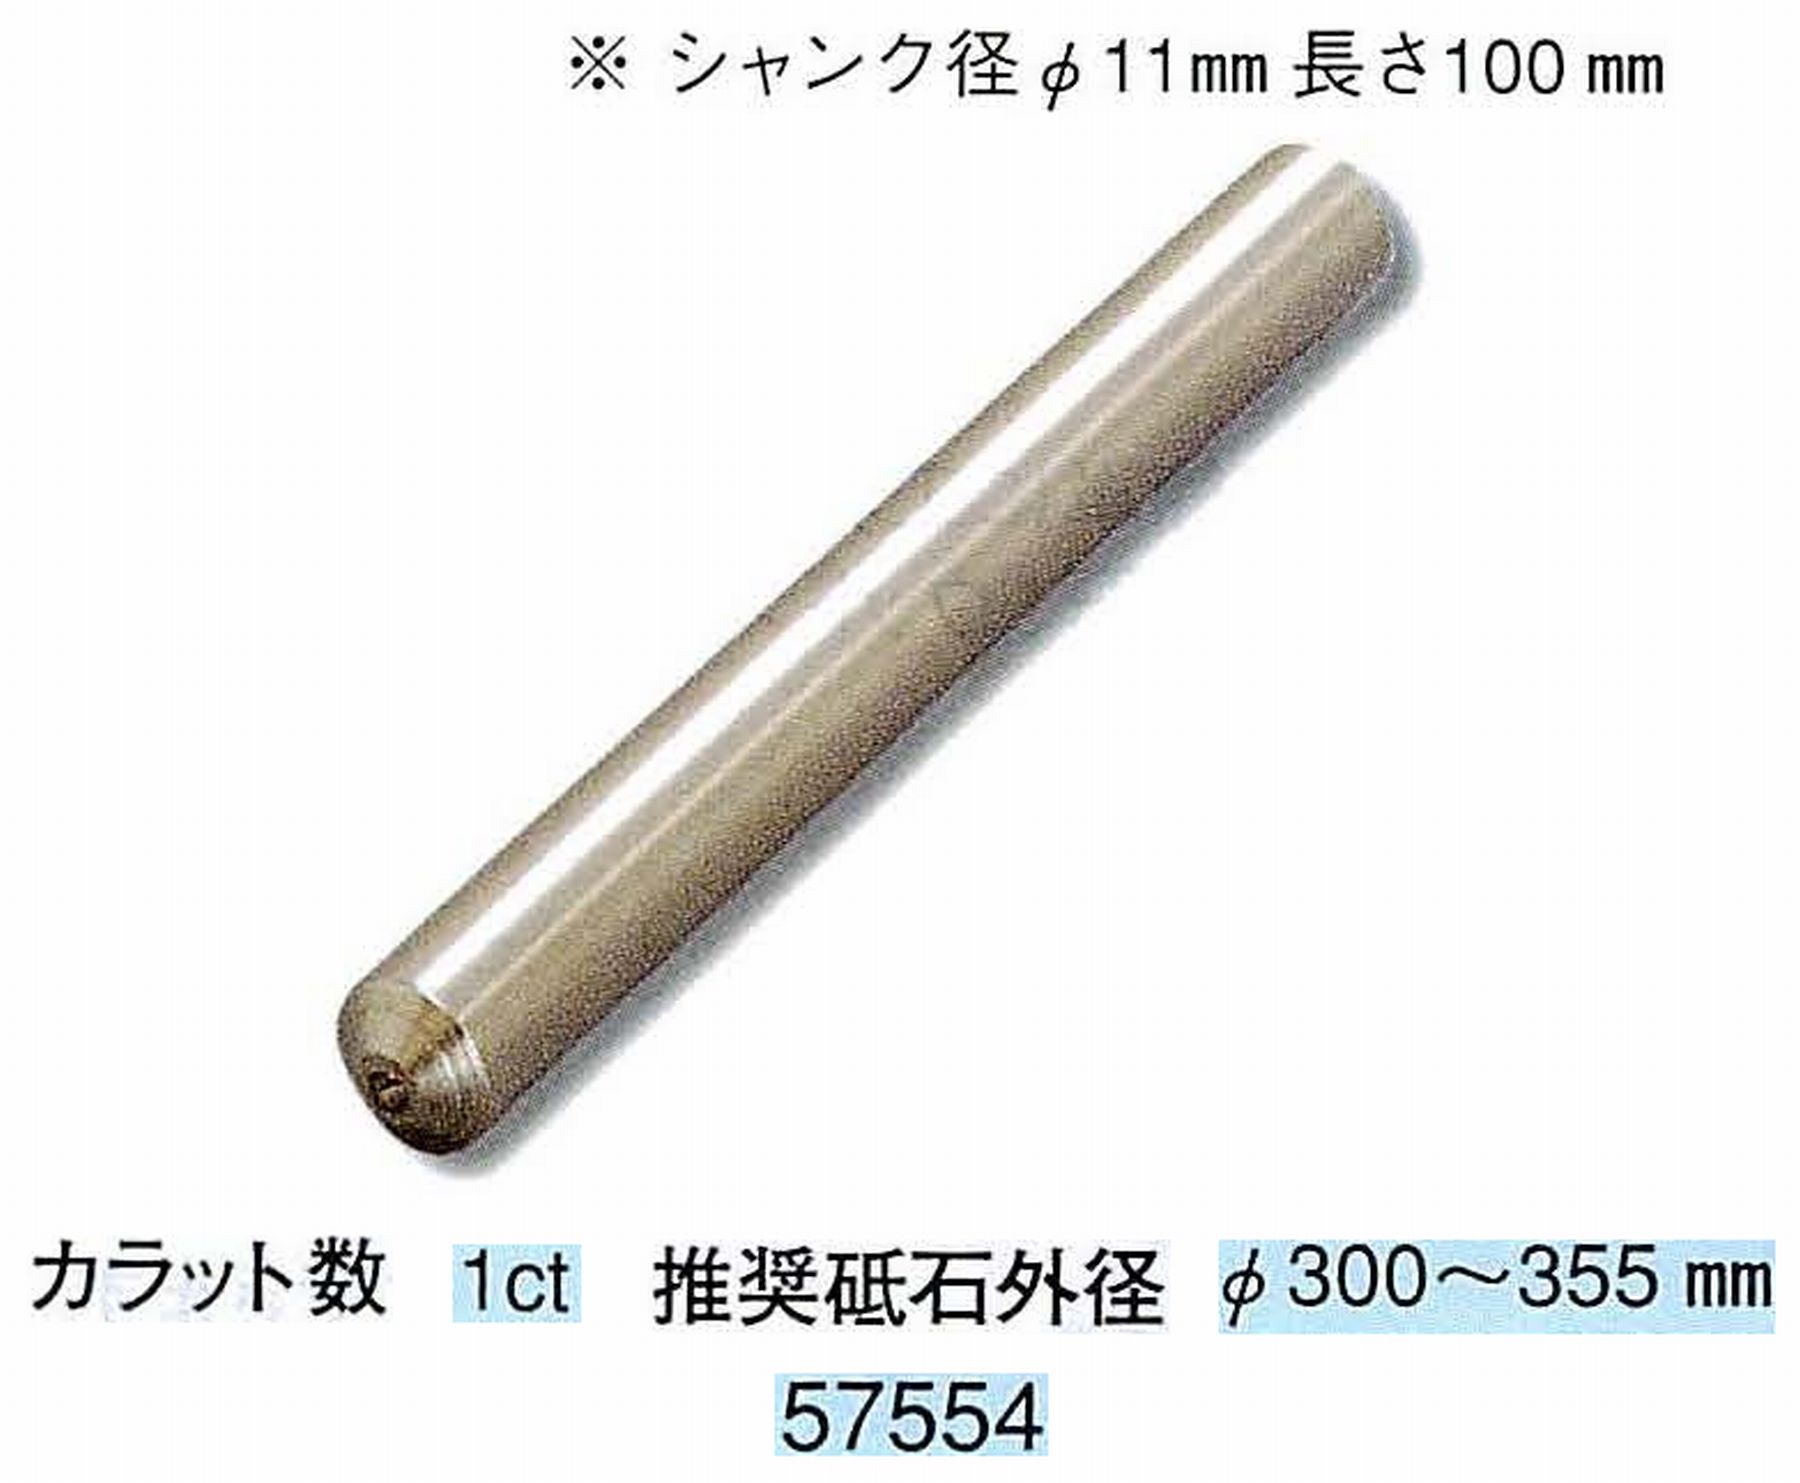 ナカニシ/NAKANISHI 天然ダイヤモンド 単石ドレッサ(シャンク径φ11mm 長さ100mm) 57554